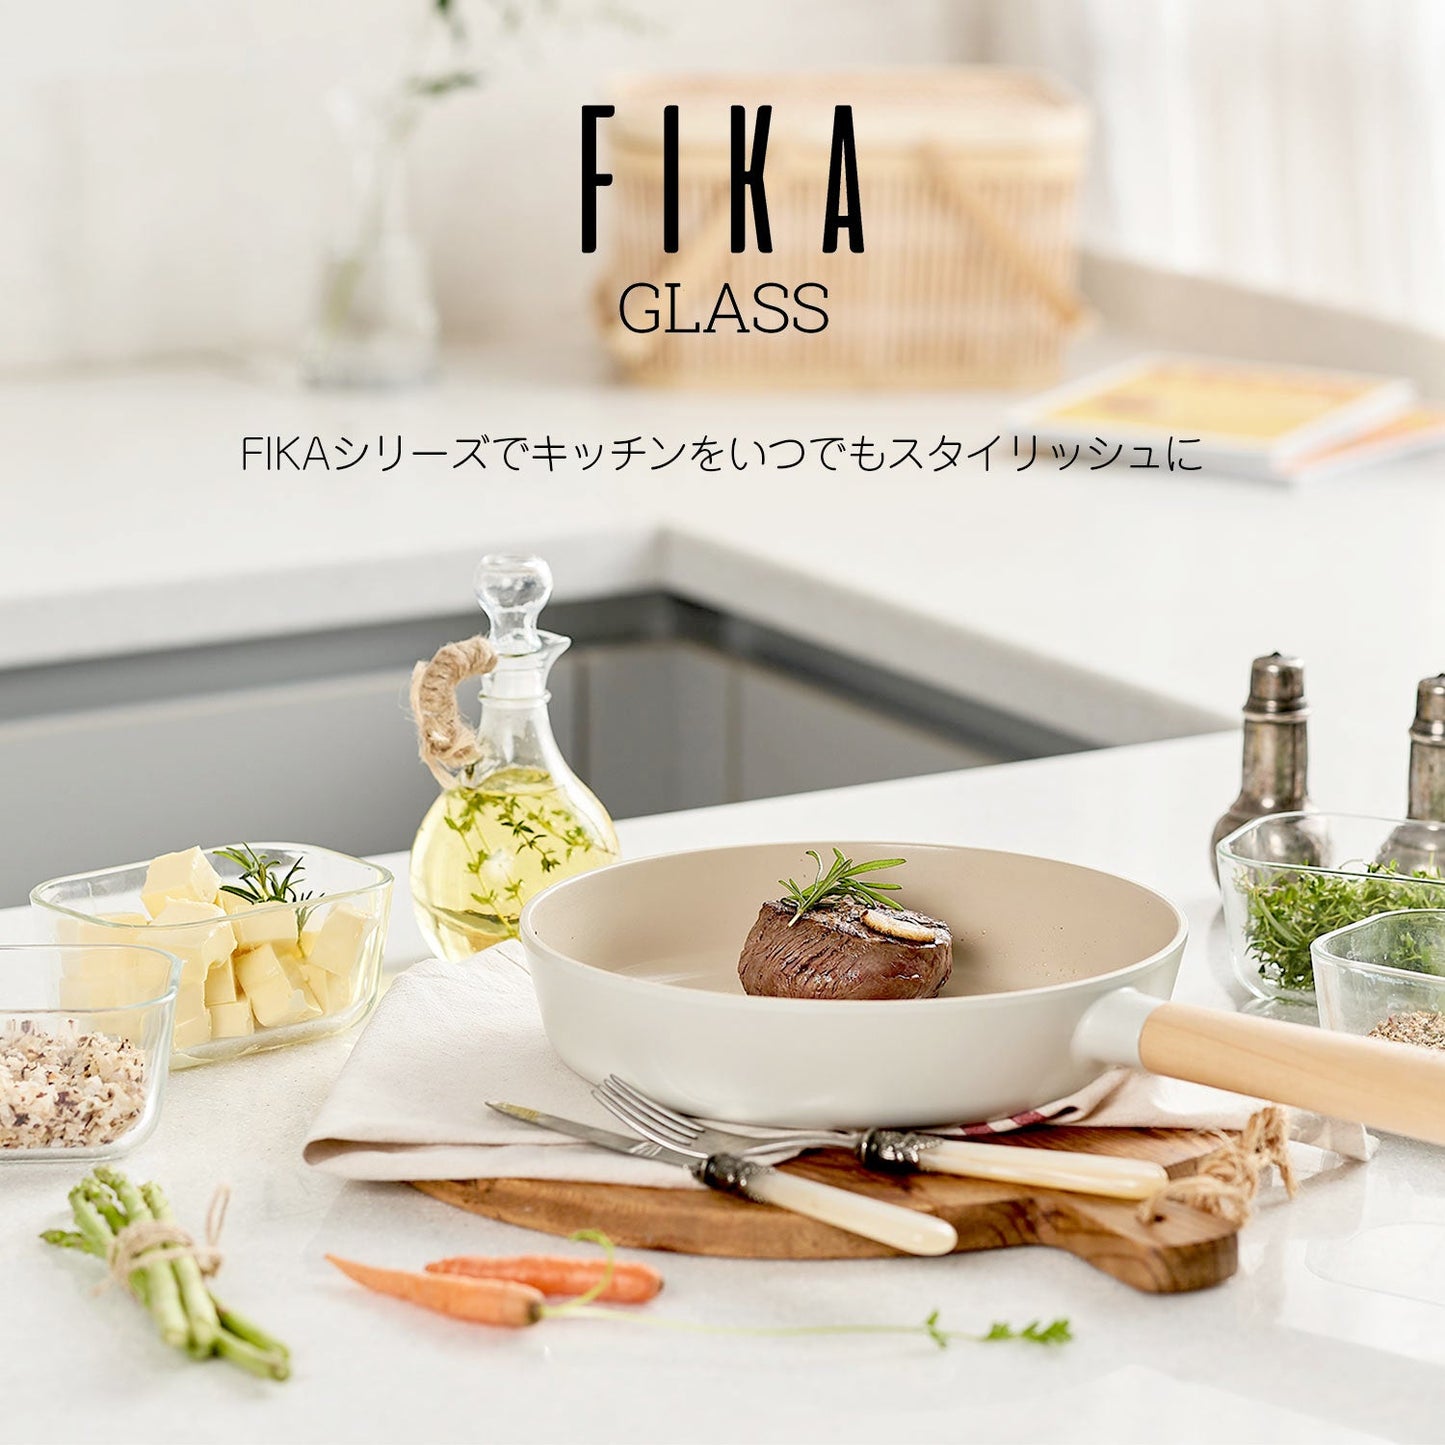 FIKAGLASS耐熱ガラス食品保存用容器 四角3点セット